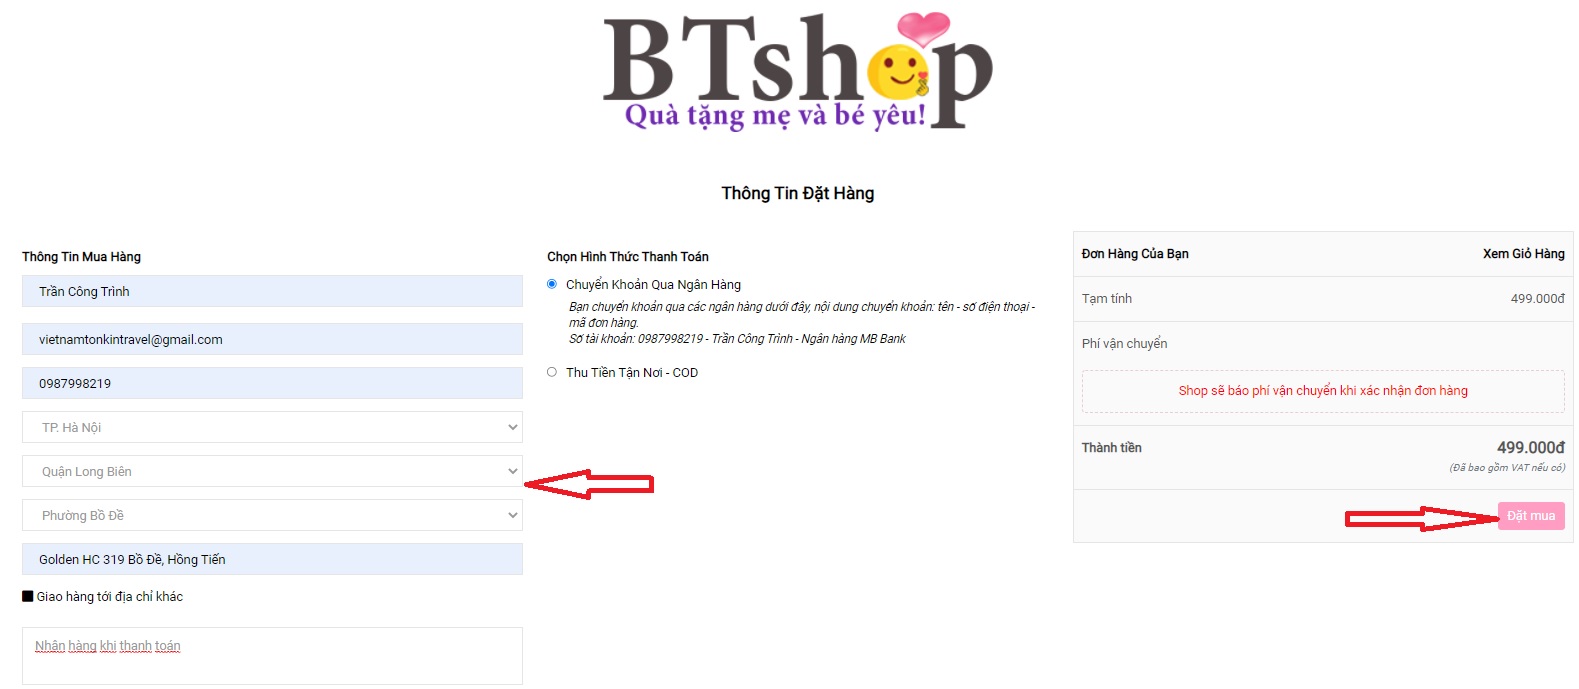 Đăng ký mua khóa học toán soroban online tại BTshop